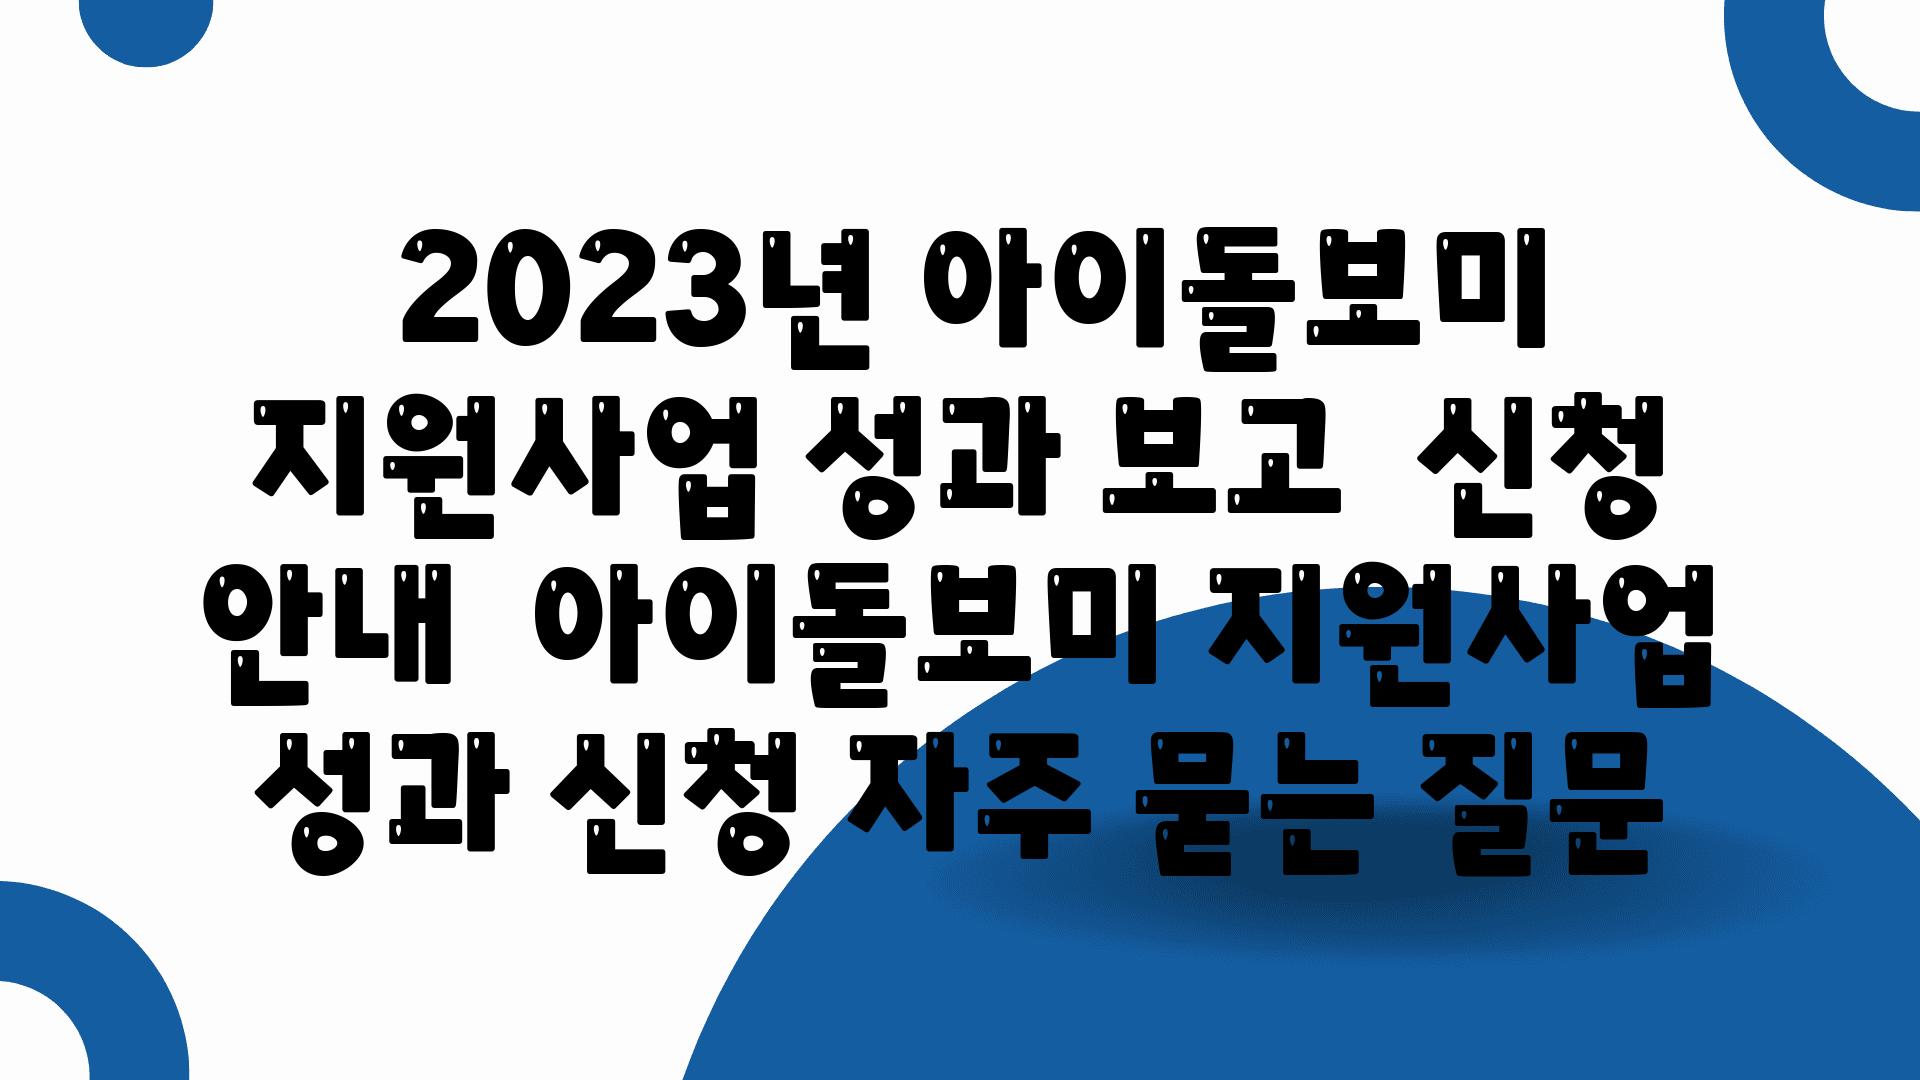  2023년 아이돌보미 지원사업 성과 보고  신청 공지  아이돌보미 지원사업 성과 신청 자주 묻는 질문